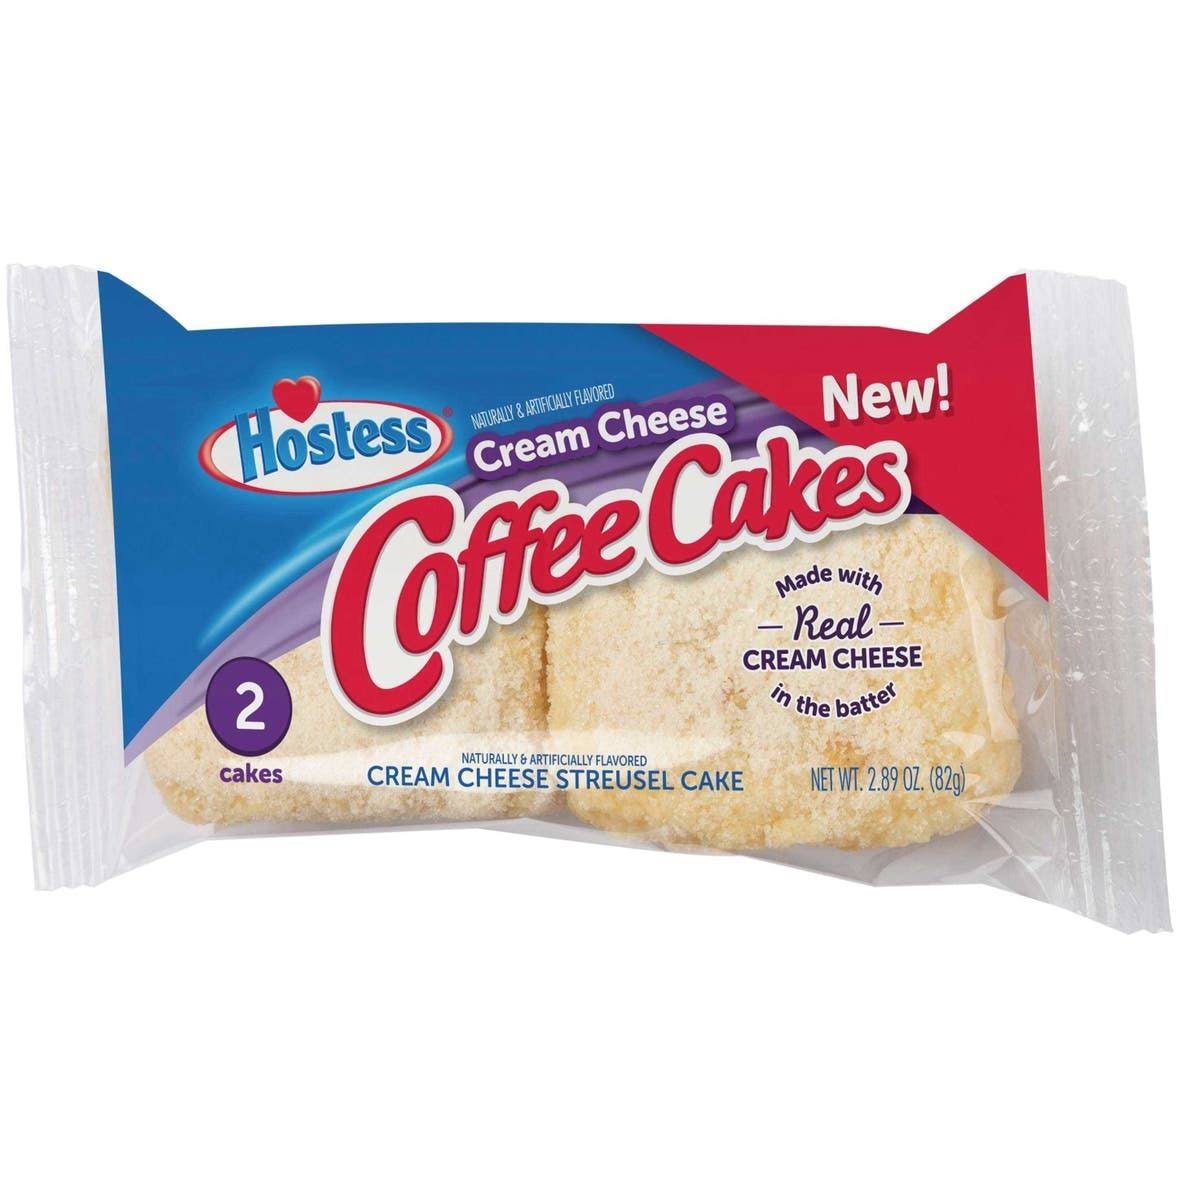 Hostess Coffee Cakes, Cream Cheese - 2 cakes, 2.89 oz